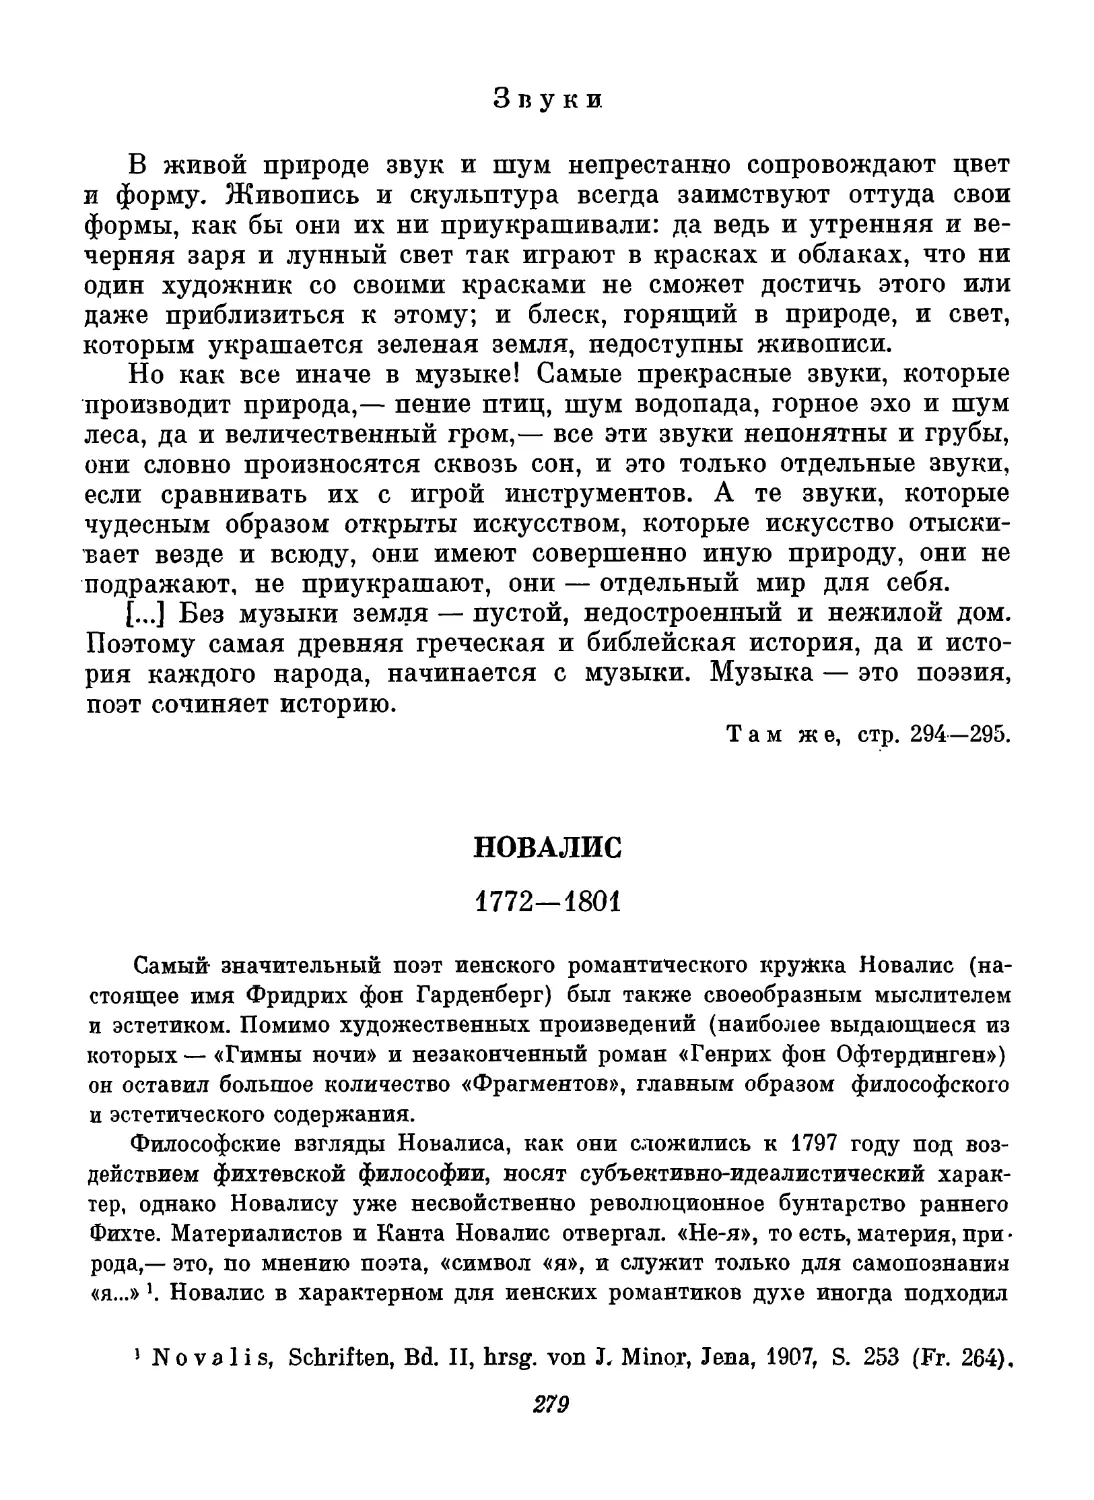 Новалис. Вступительный текст Н. И Балашова